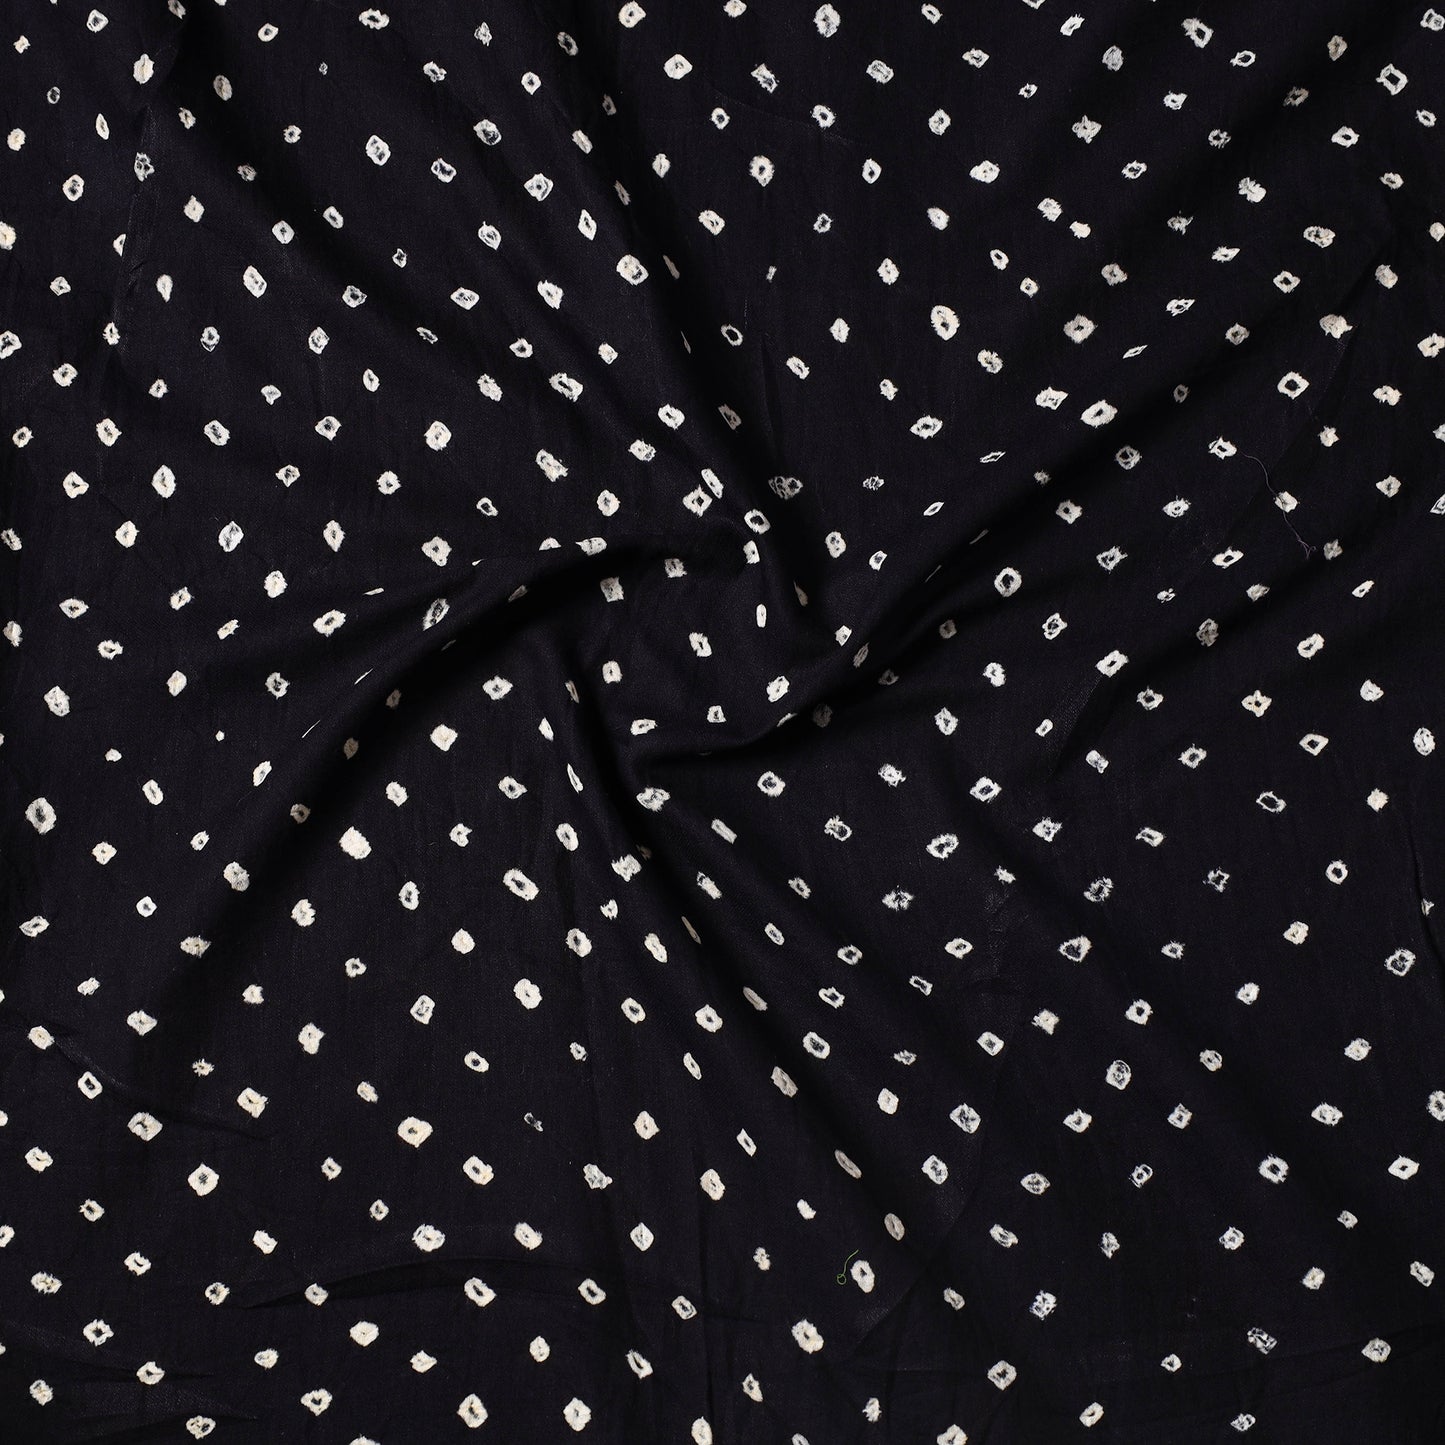 Black - Kutch Bandhani Tie-Dye Cotton Precut Fabric (1.15 meter) 63